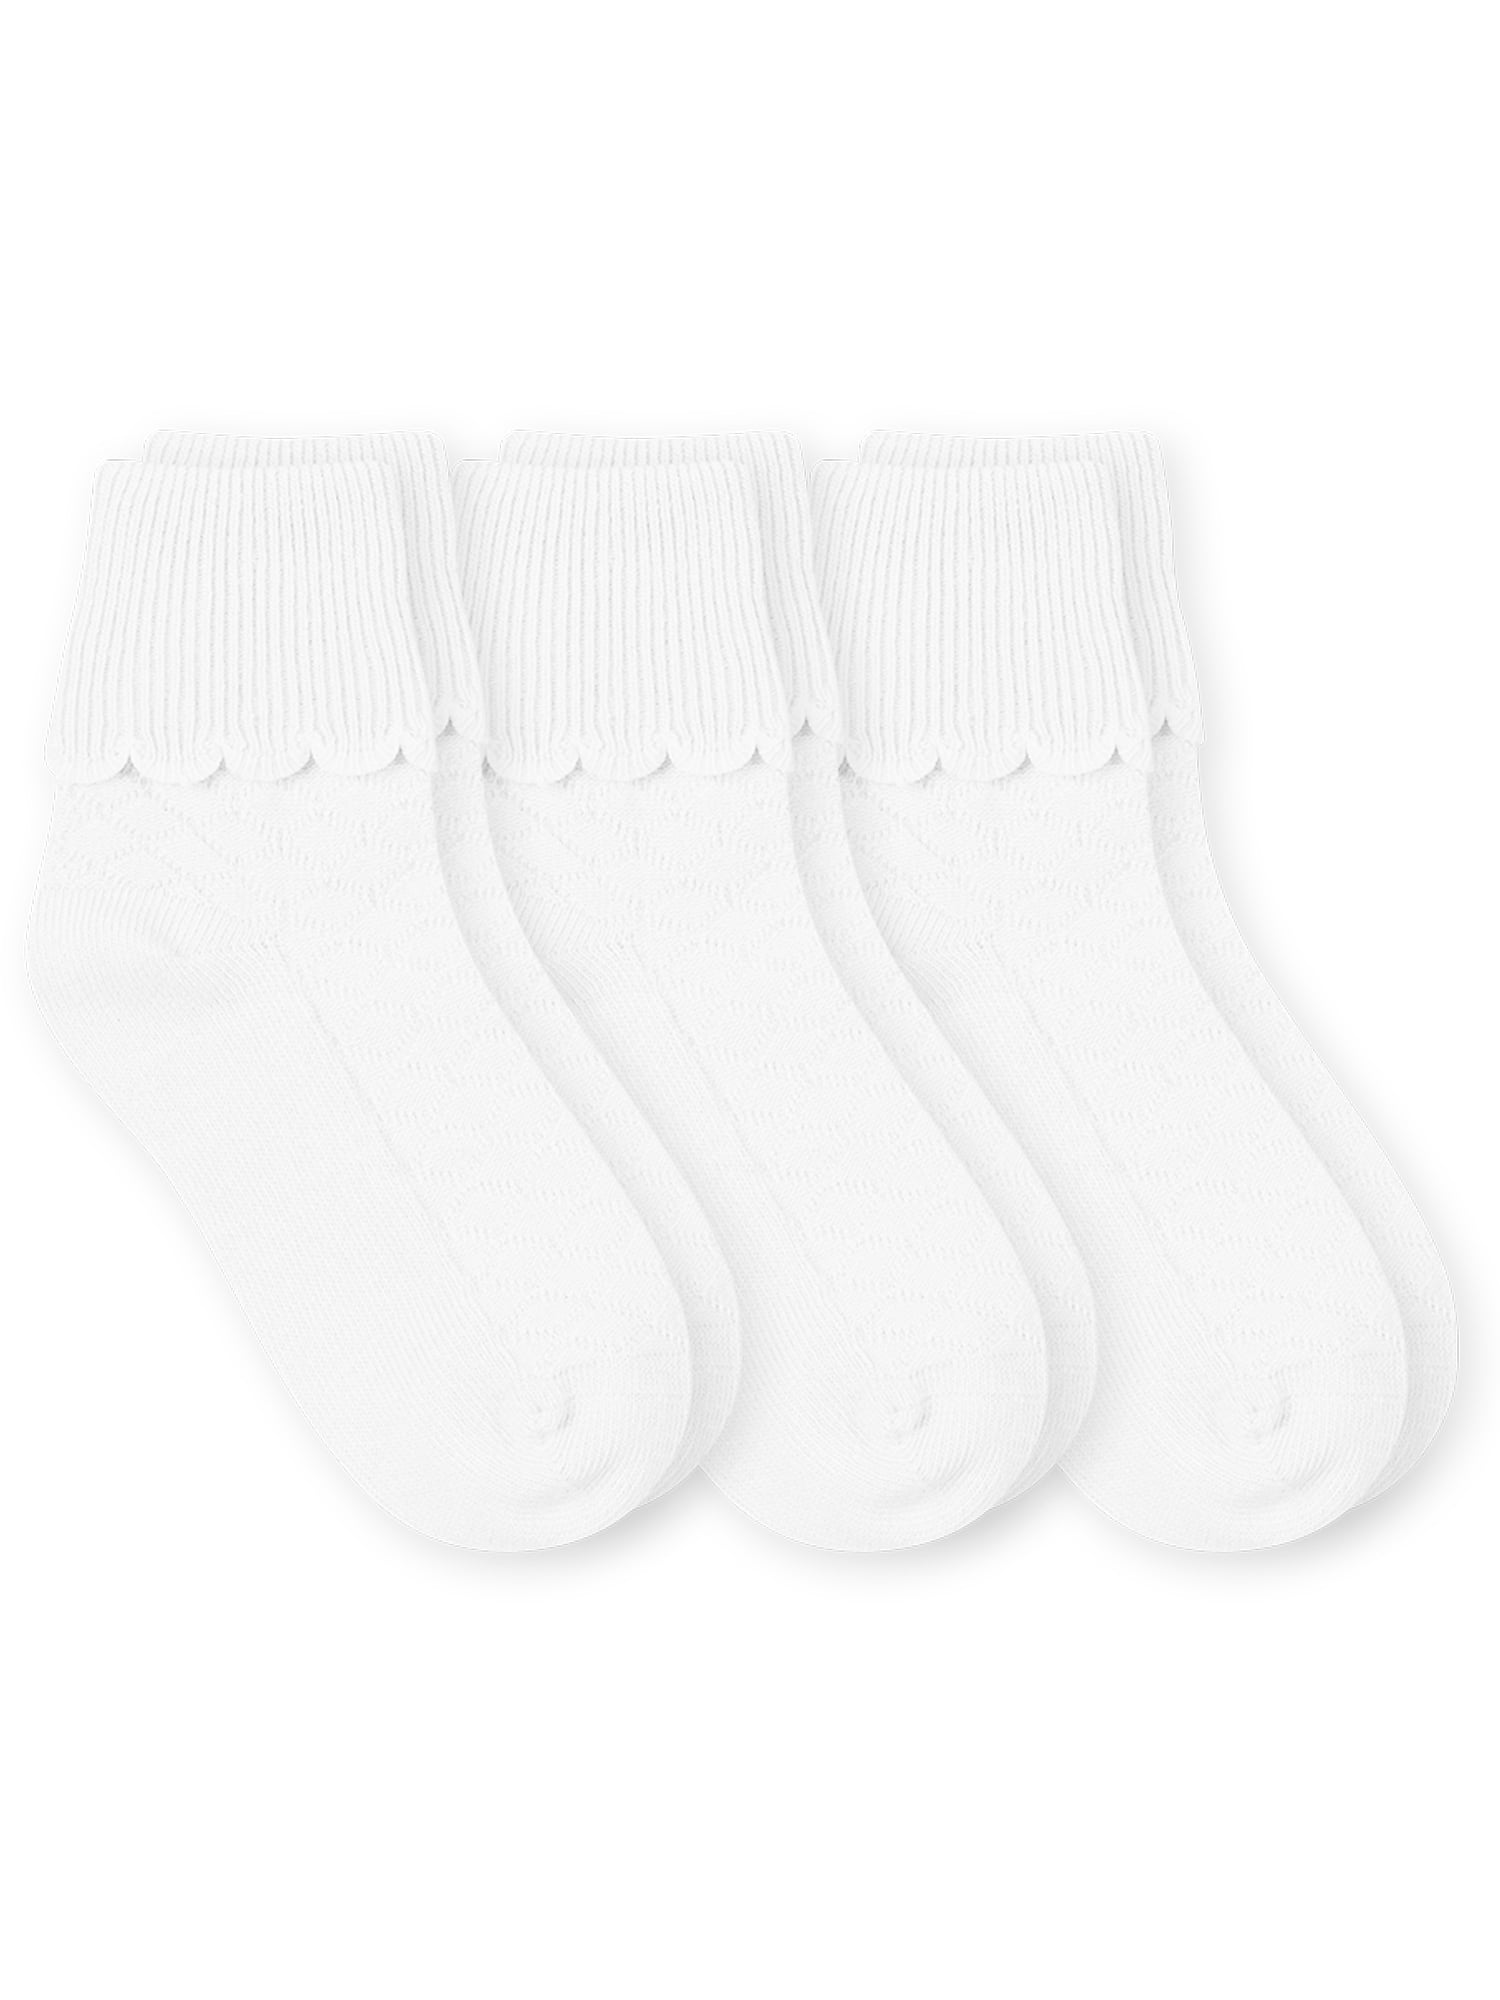 Jefferies Daisy 3 Pack Eyelet Ankle Triple Treat Socks  1-2Y 2-4Y 3-7Y 